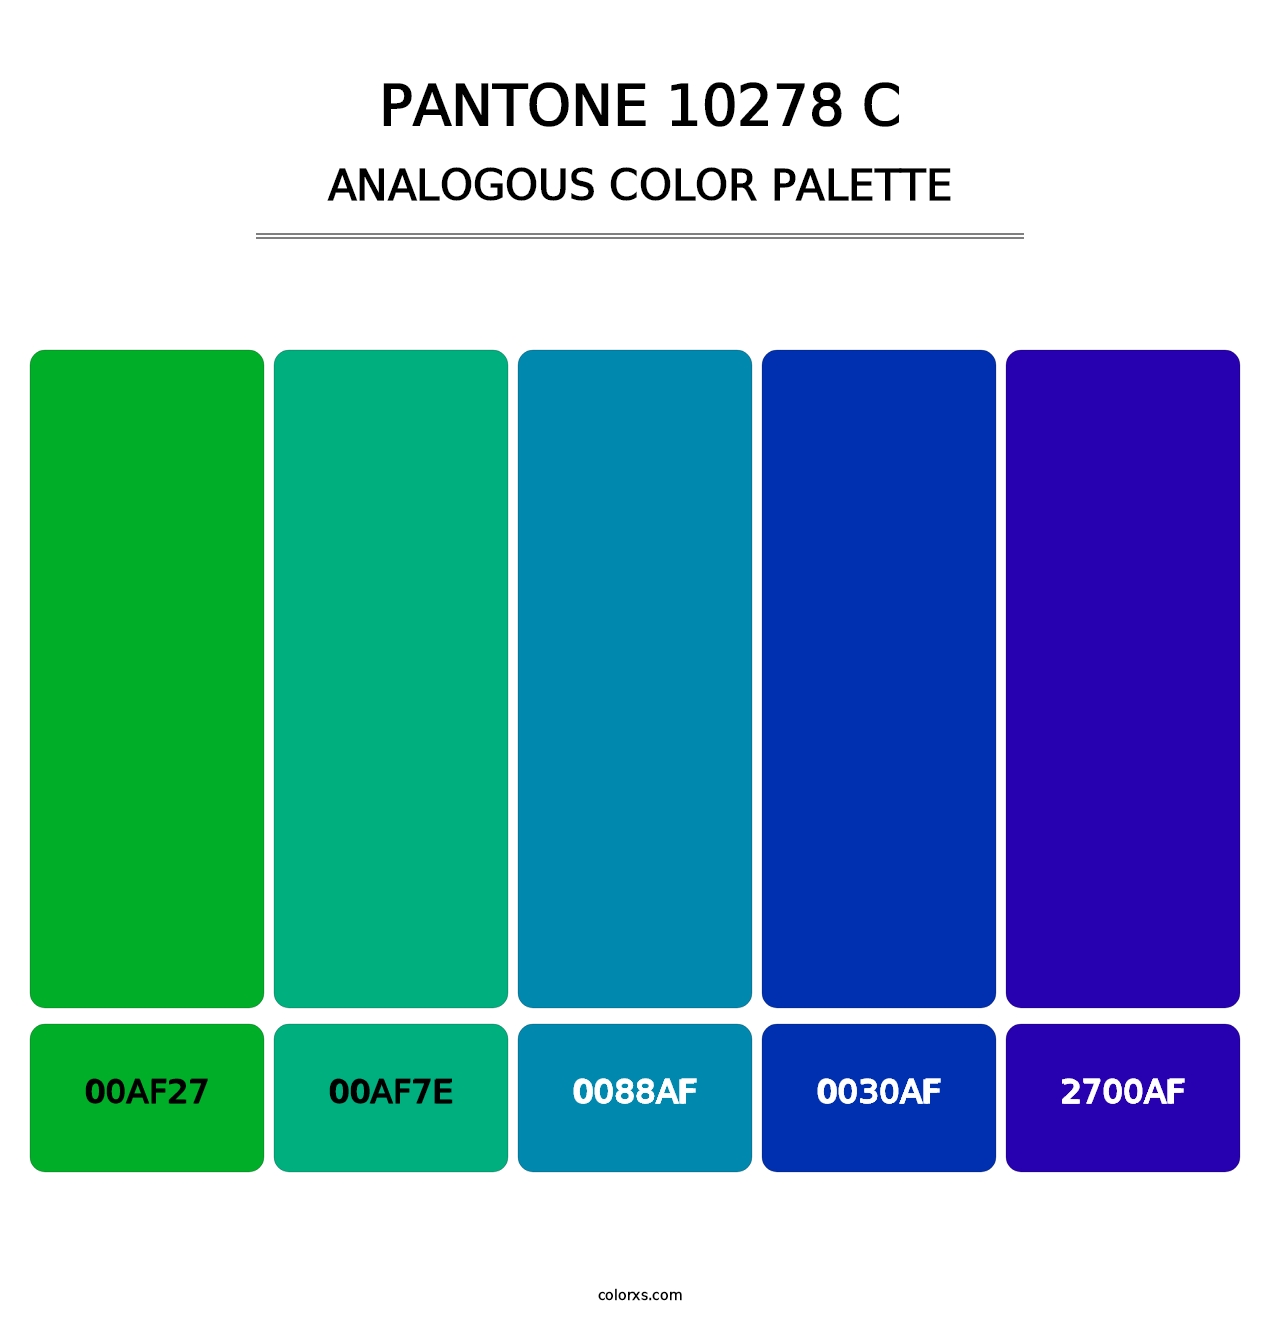 PANTONE 10278 C - Analogous Color Palette